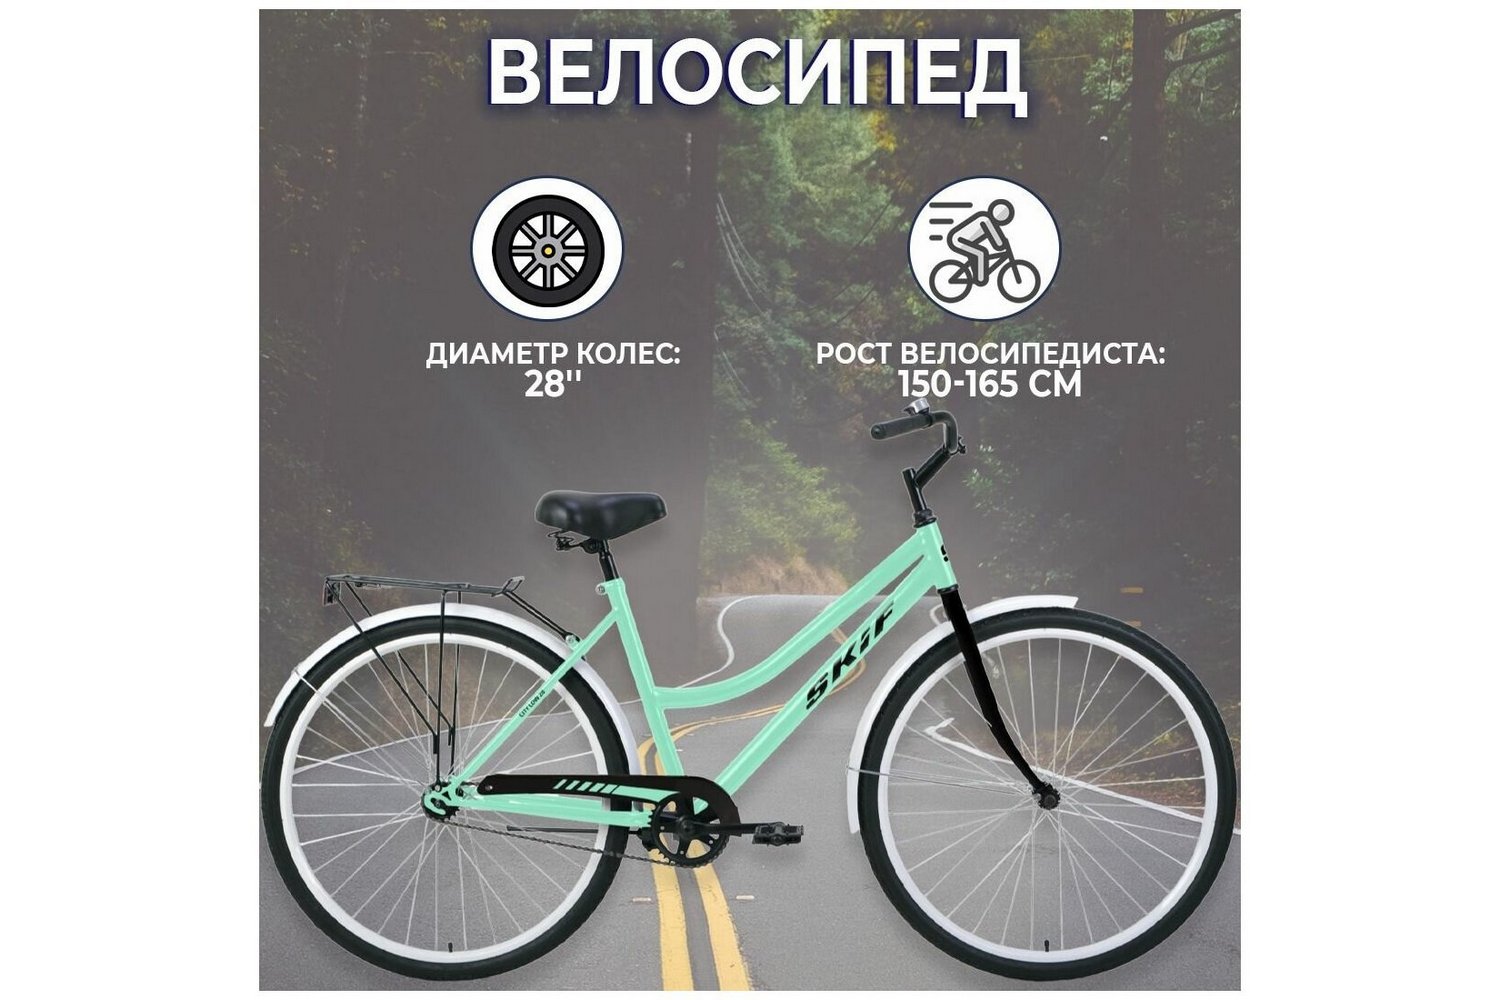 Дорожный велосипед Skif City 28 Low, год 2022, цвет Зеленый-Черный